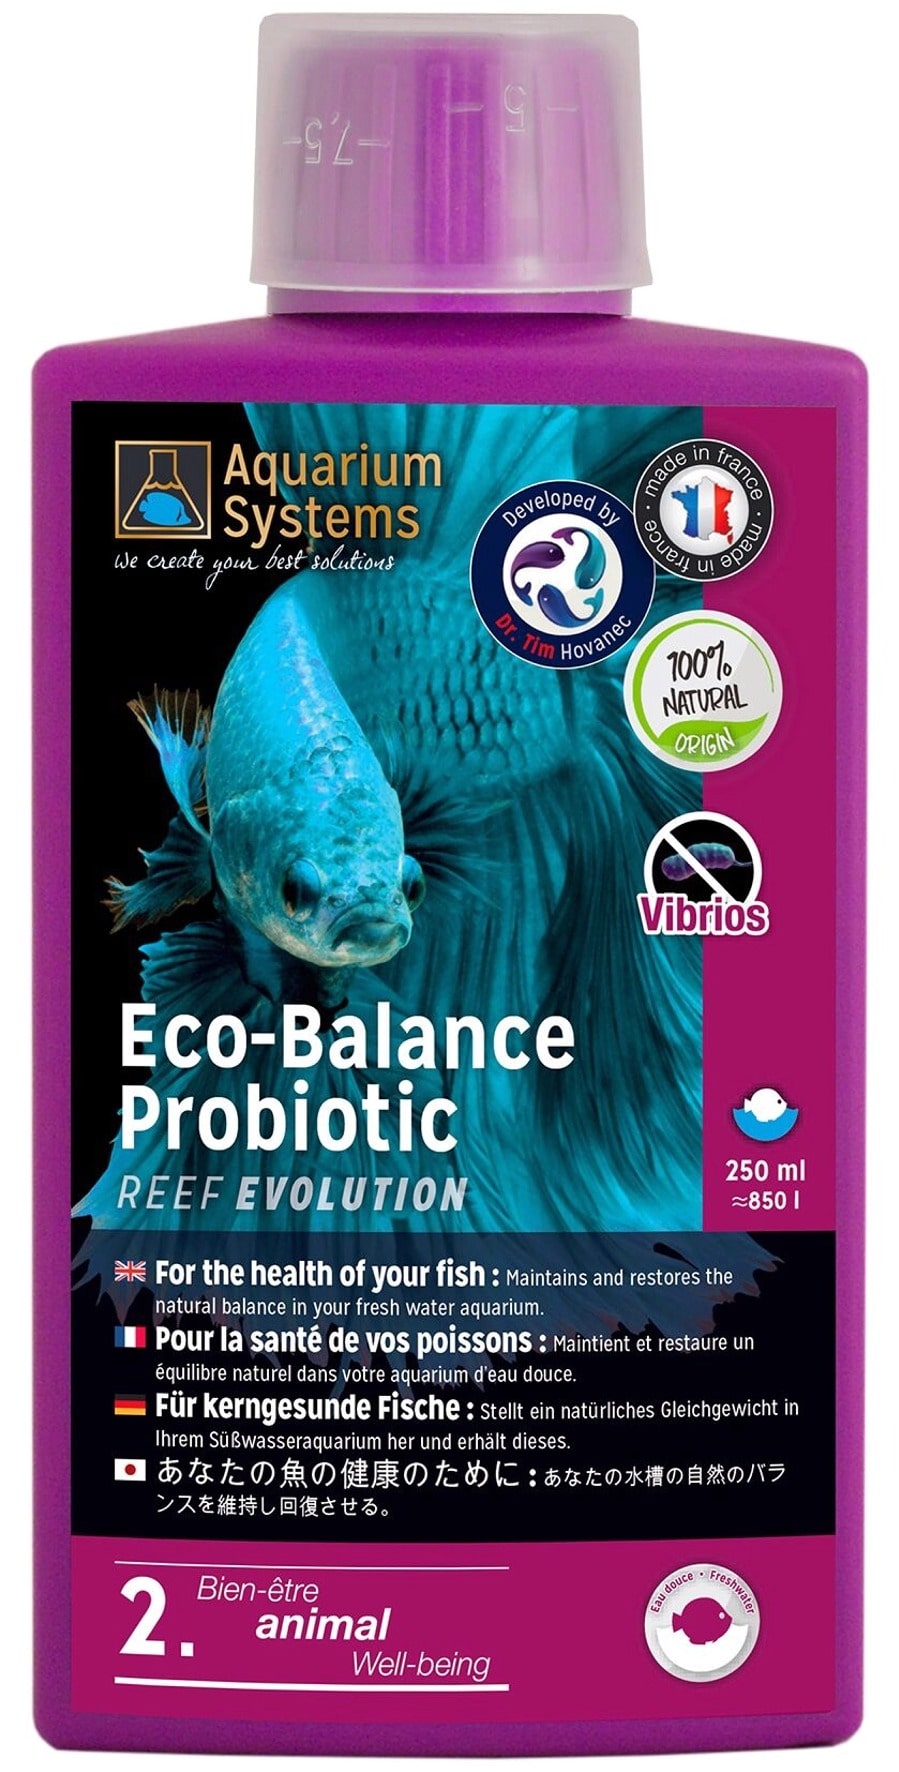 aquarium-systems-eco-balance-probiotic-eau-douce-250-ml-bacteries-probiotiques-pour-maintenir-et-restaurer-l-equilibre-de-l-aquarium-min